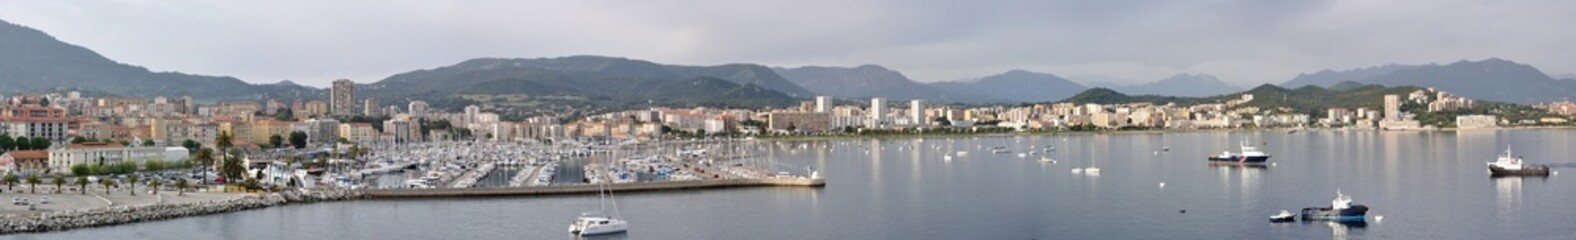 Fototapeta na wymiar Korsyka Południowa